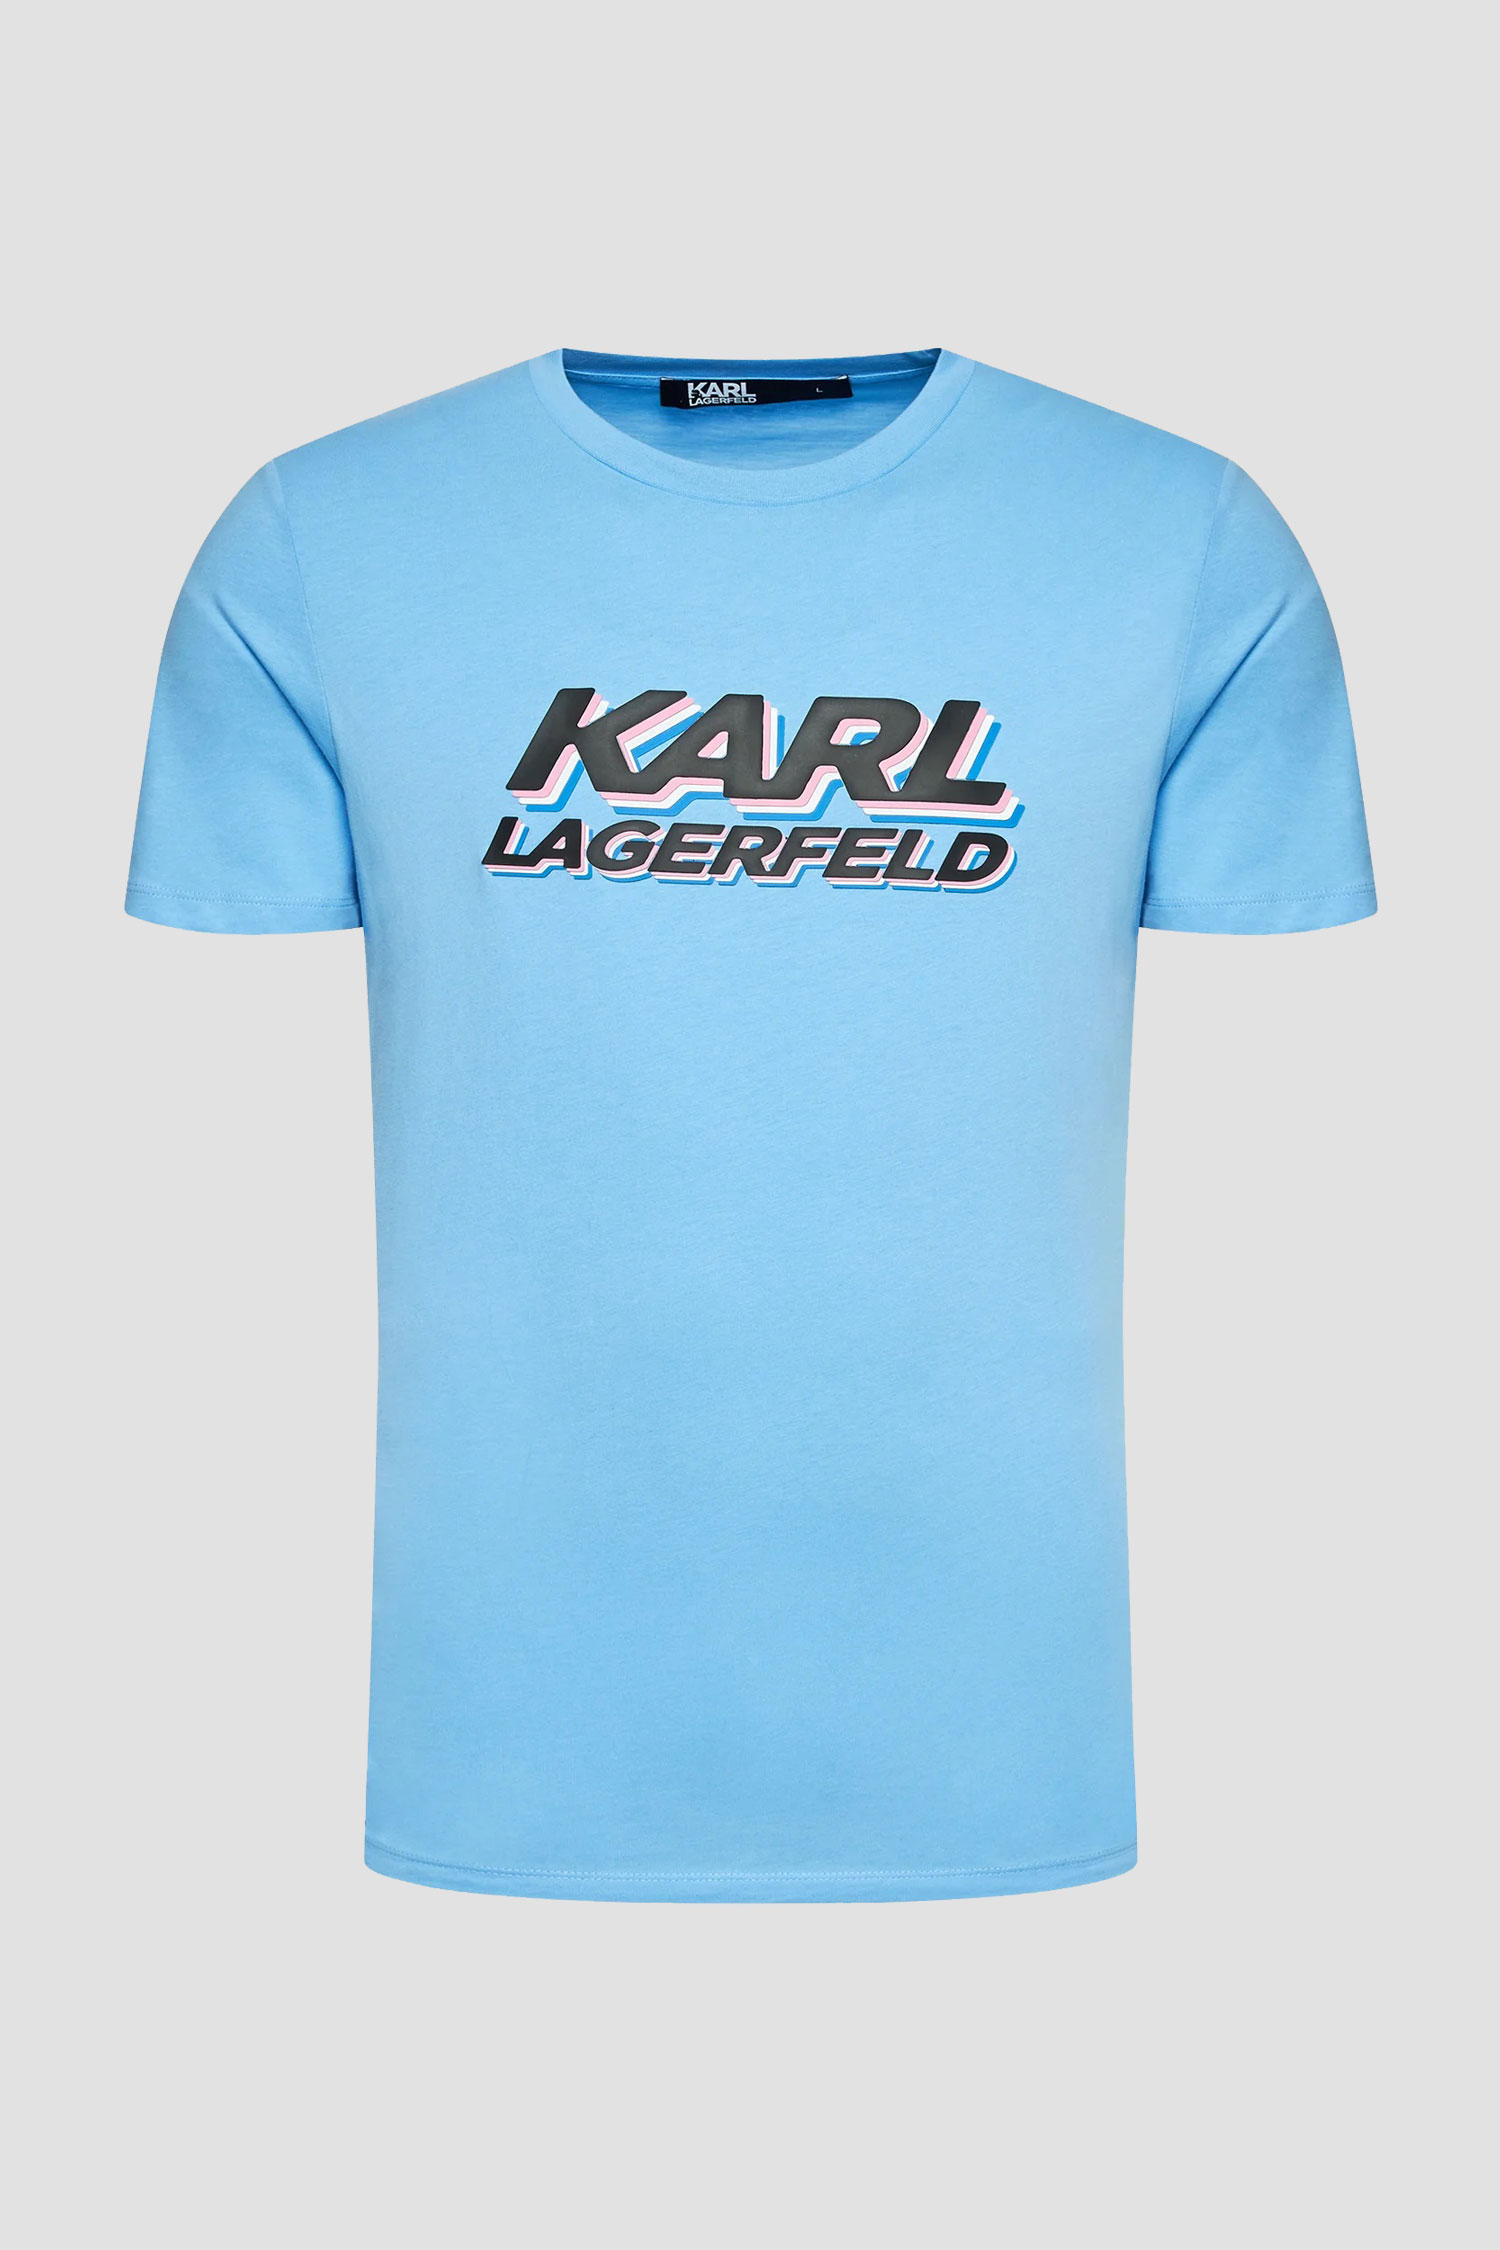 Мужская голубая футболка Karl Lagerfeld 523224.755080;630